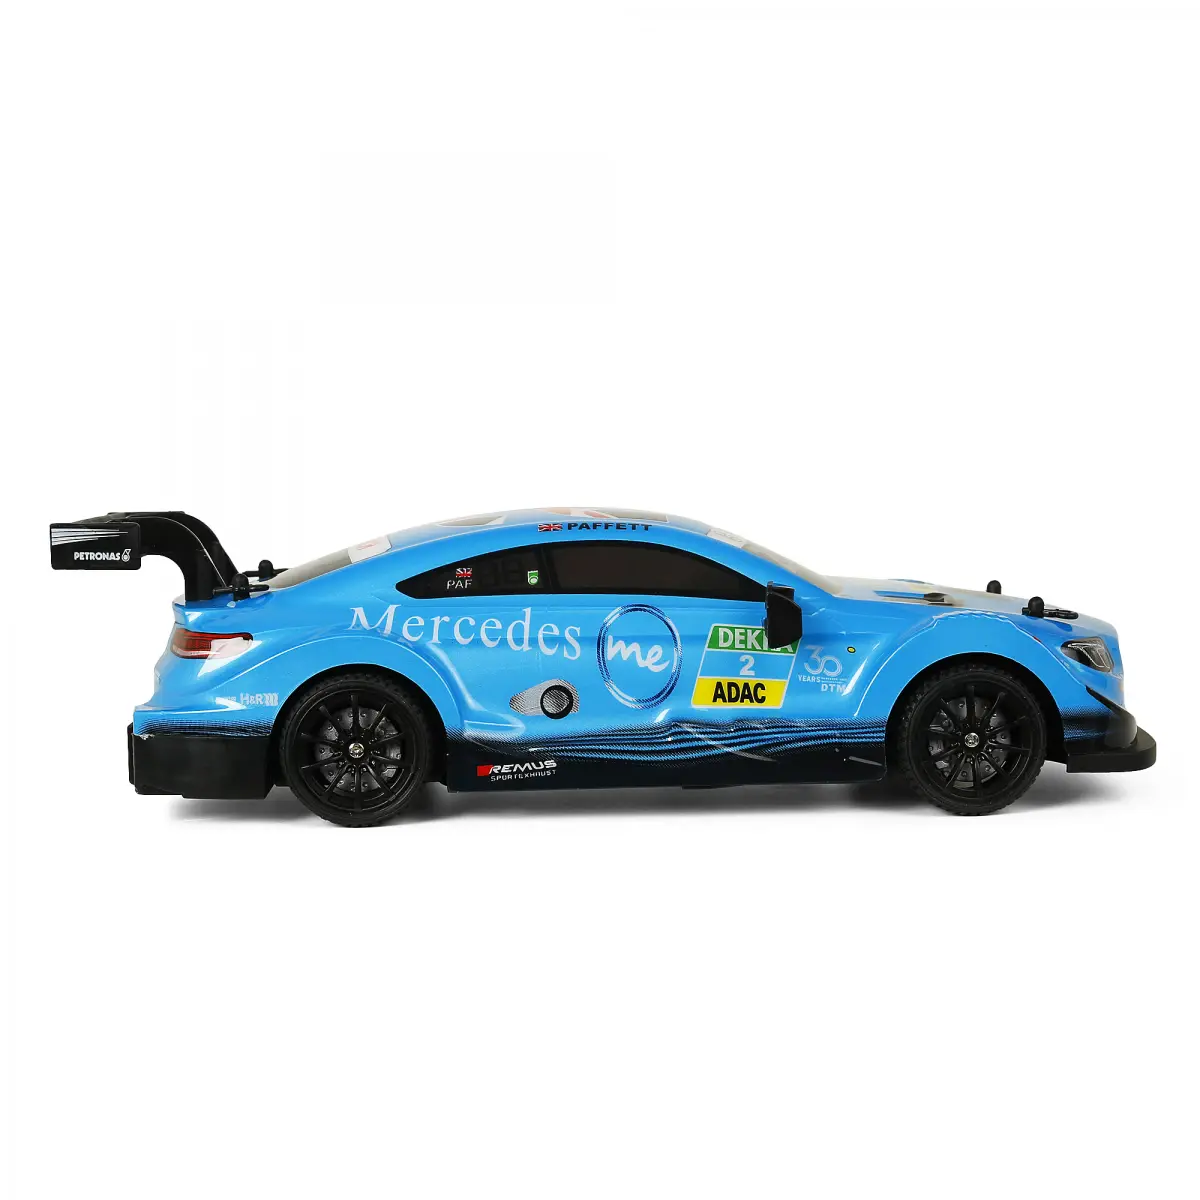 Ralleyz Mercedes-AMG C63 DTM Remote Control Car, 6Y+, Blue